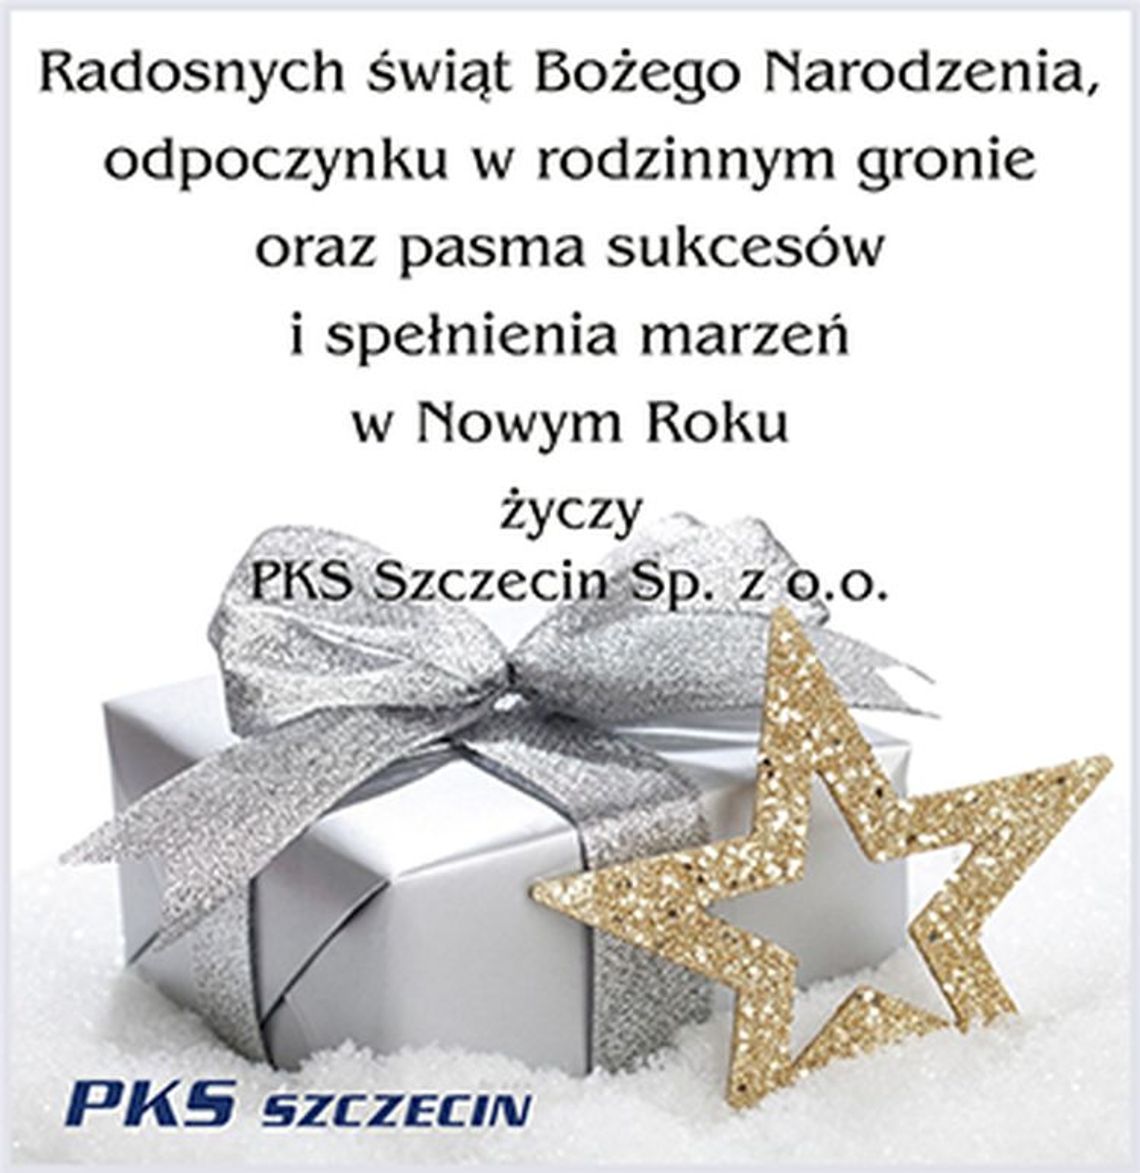 Życzenia od PKS Szczecin